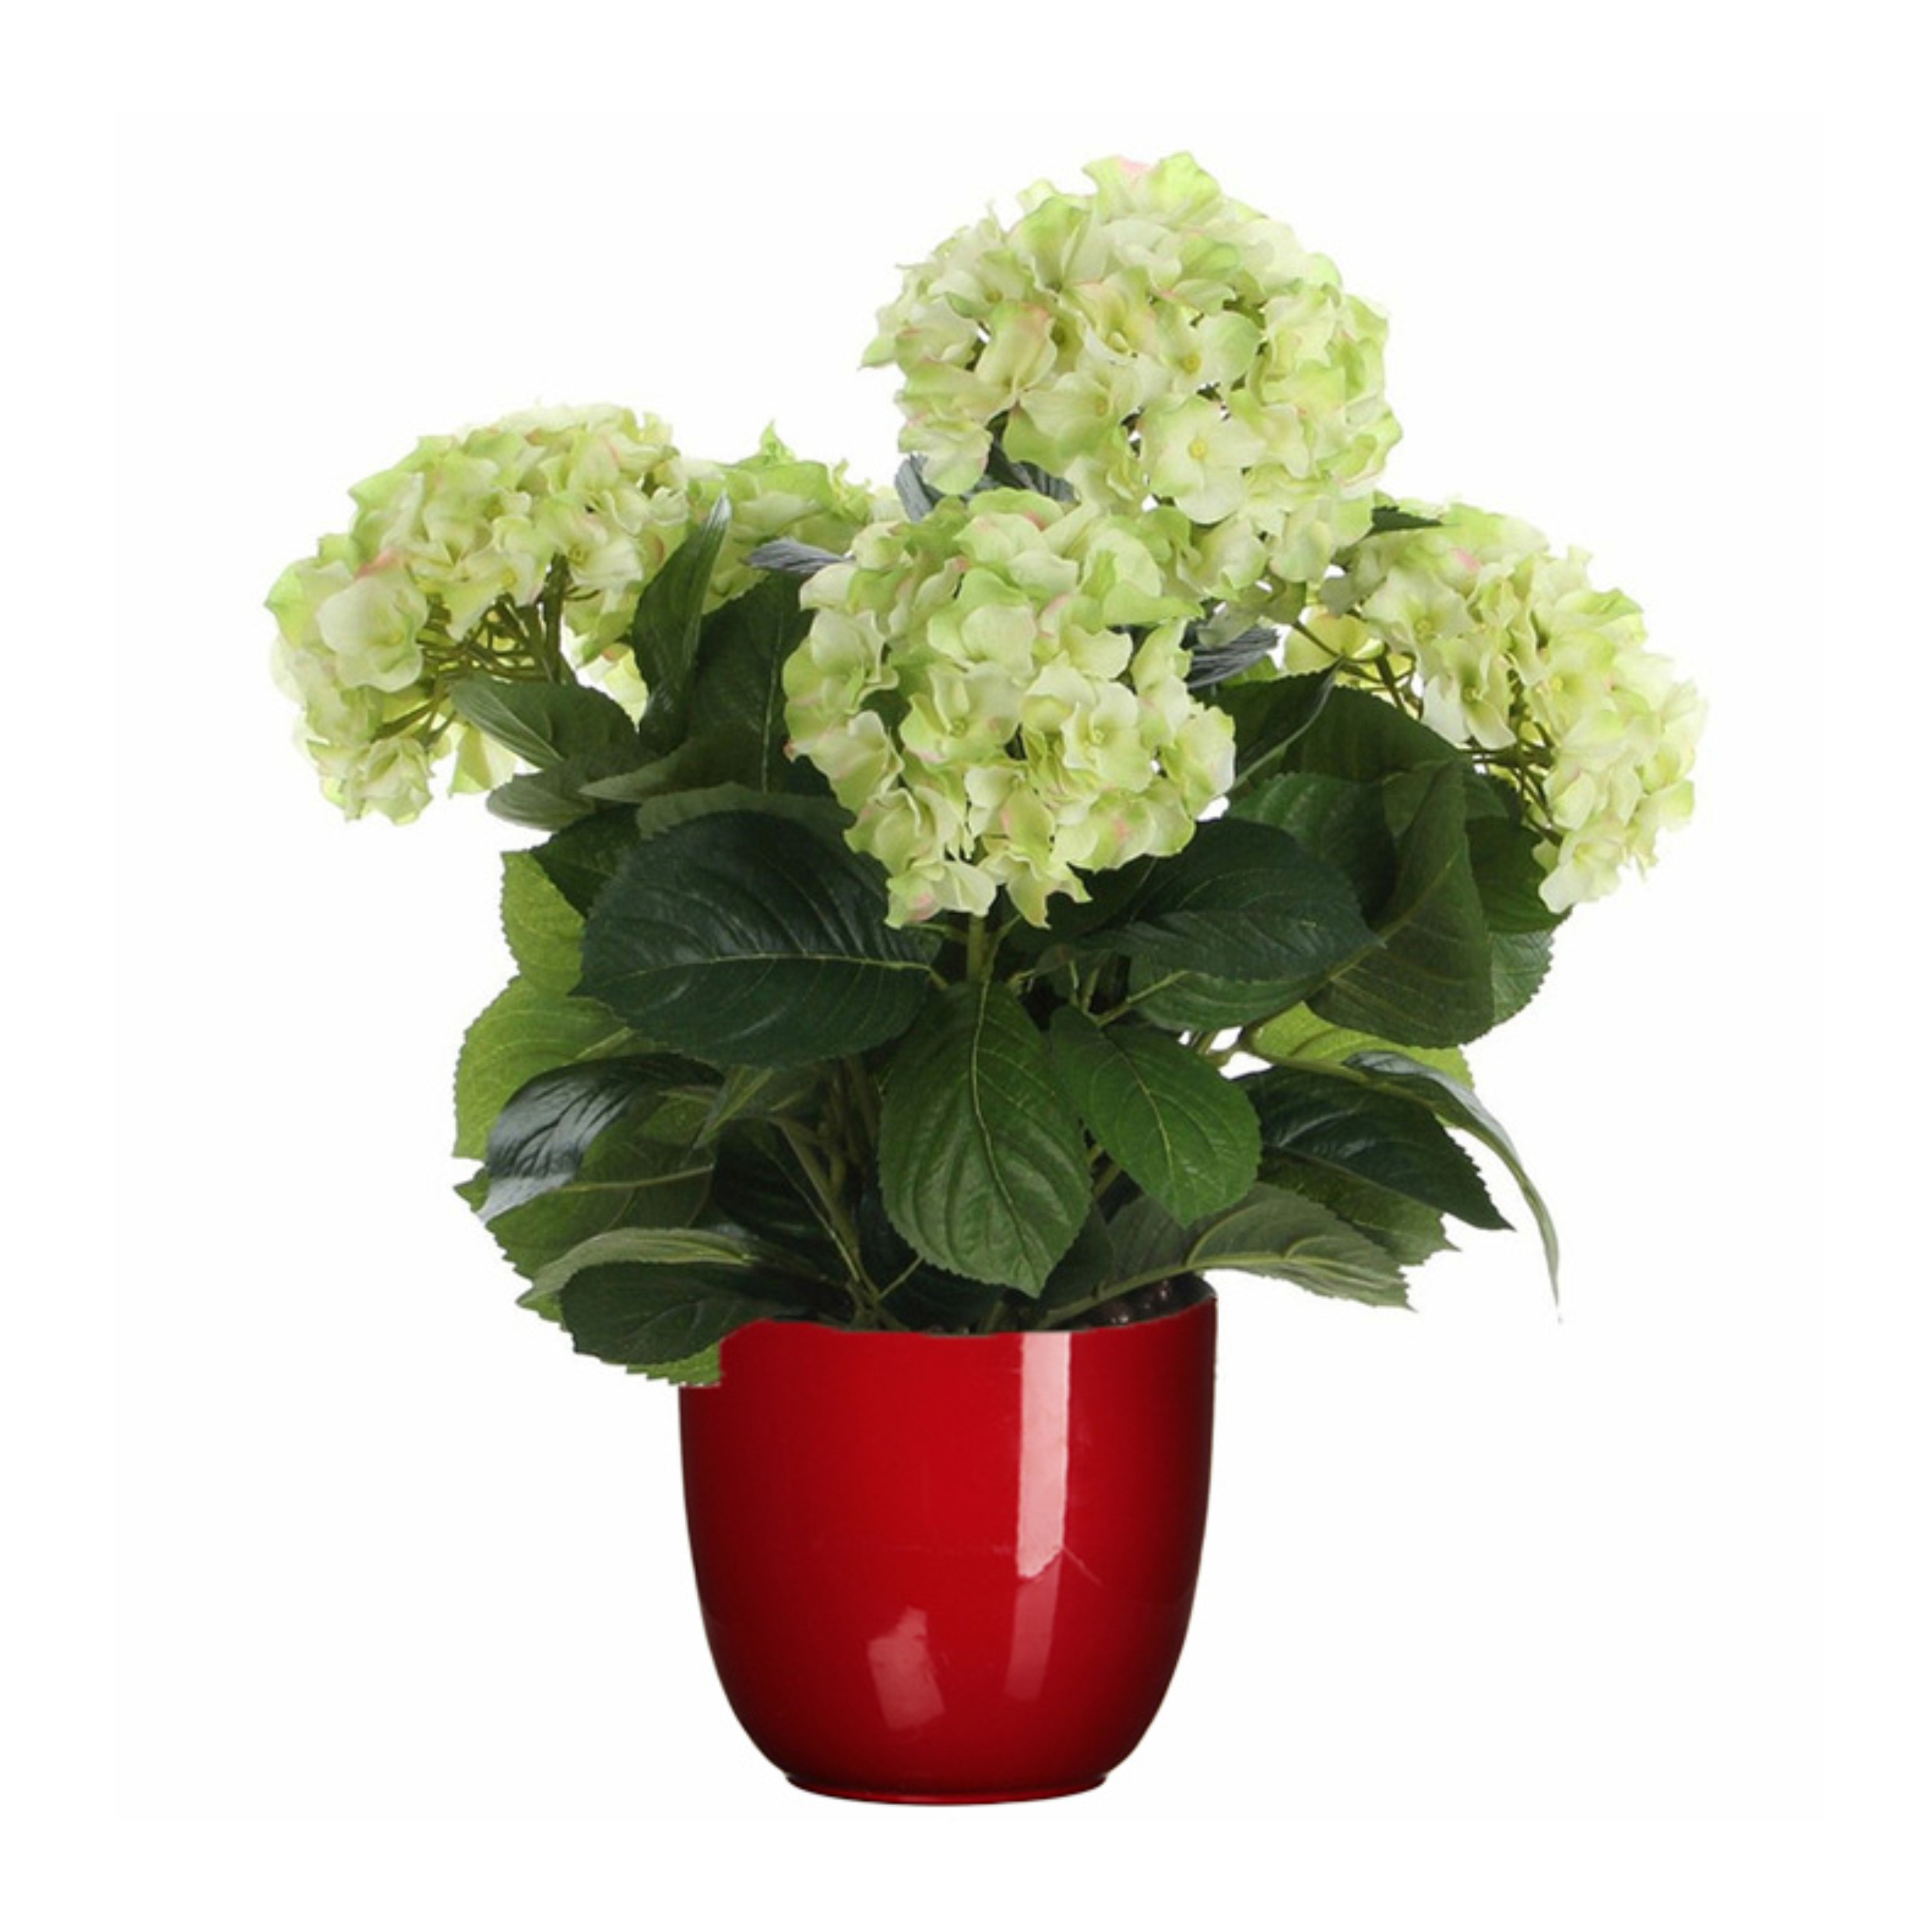 Hortensia kunstplant-kunstbloemen 45 cm groen in pot rood glans